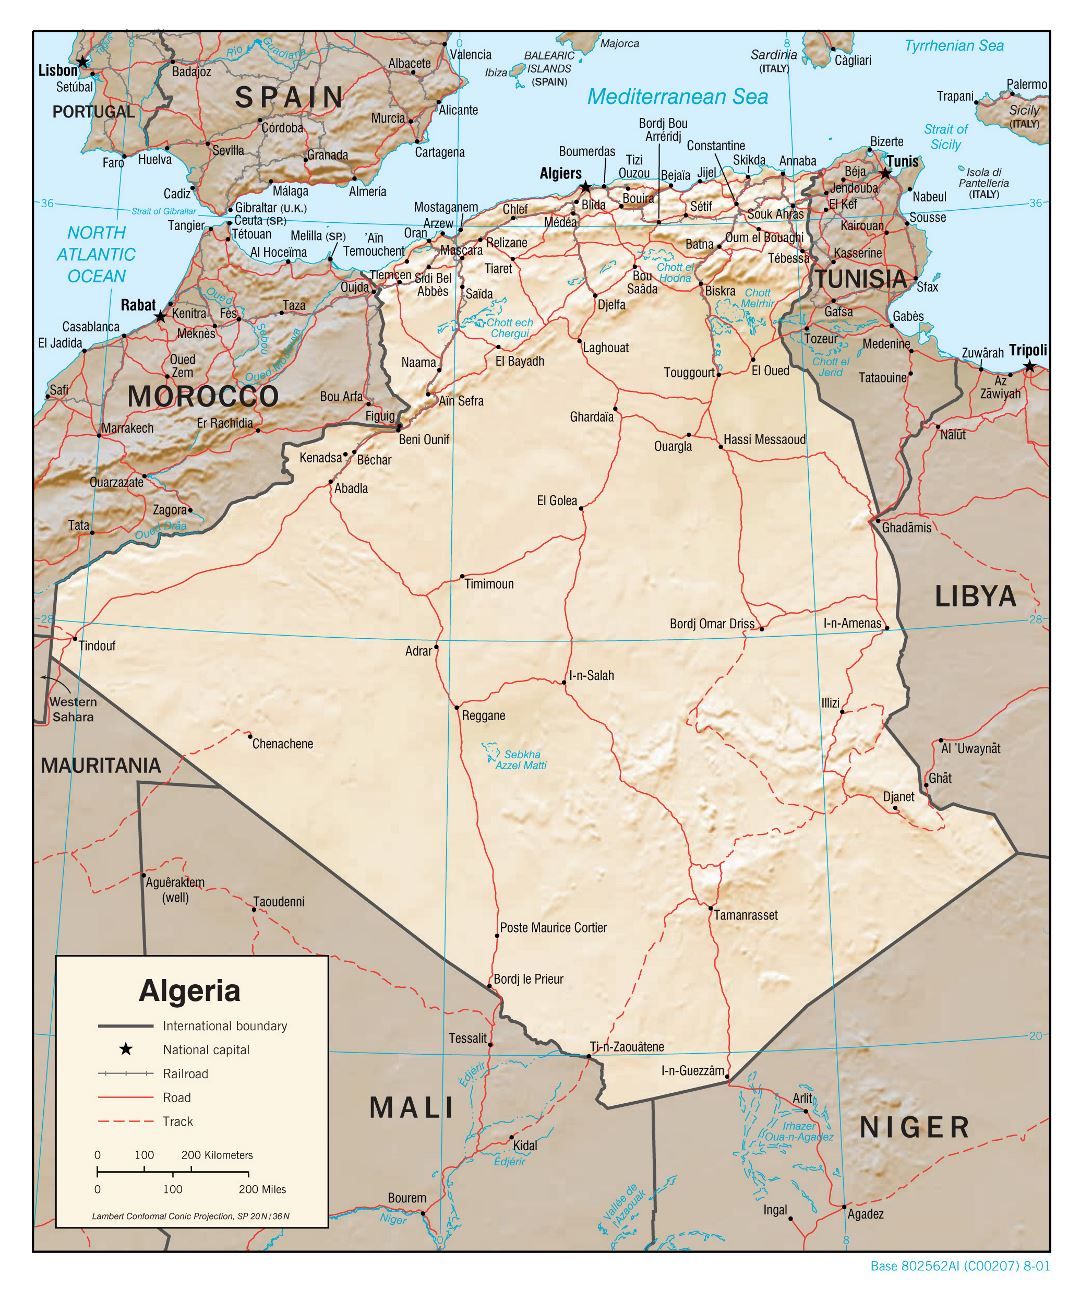 Grande detallado mapa político de Argelia con socorro, carreteras, ferrocarriles y principales ciudades - 2001